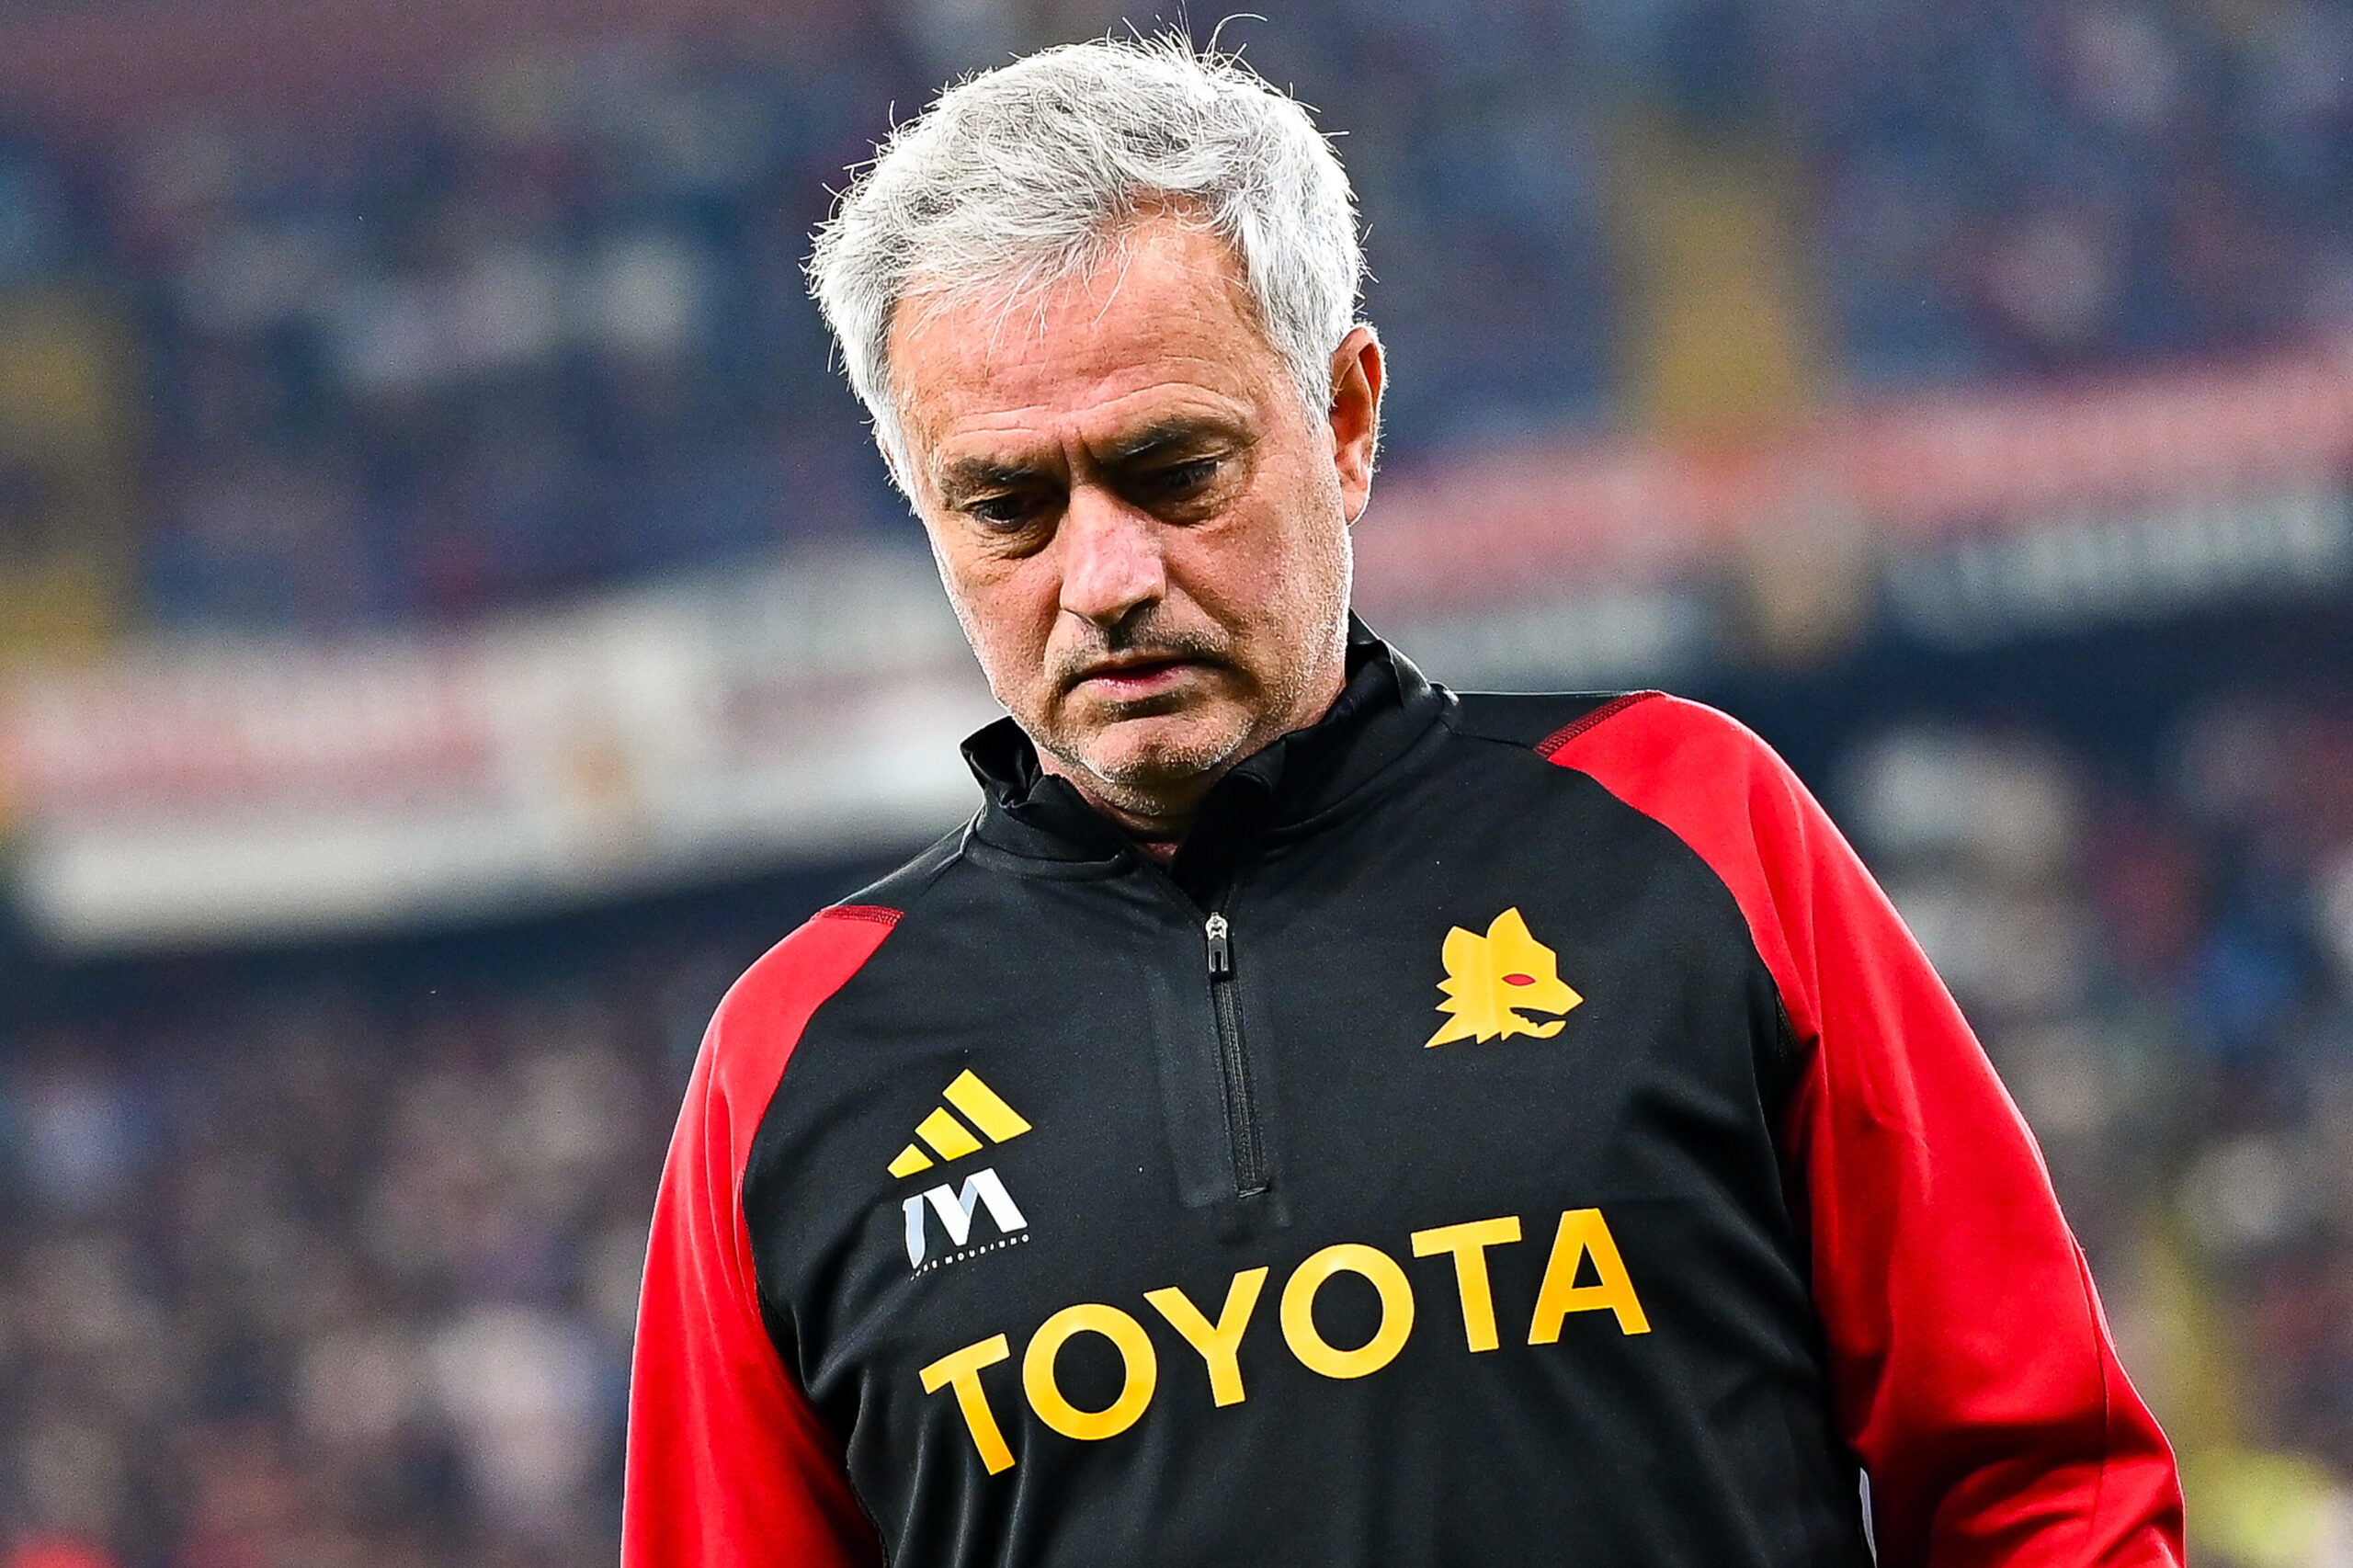 Mourinho licenziato dalla Roma, quanto costerà ai Friedkin il flop dello Special One e la disastrosa media punti